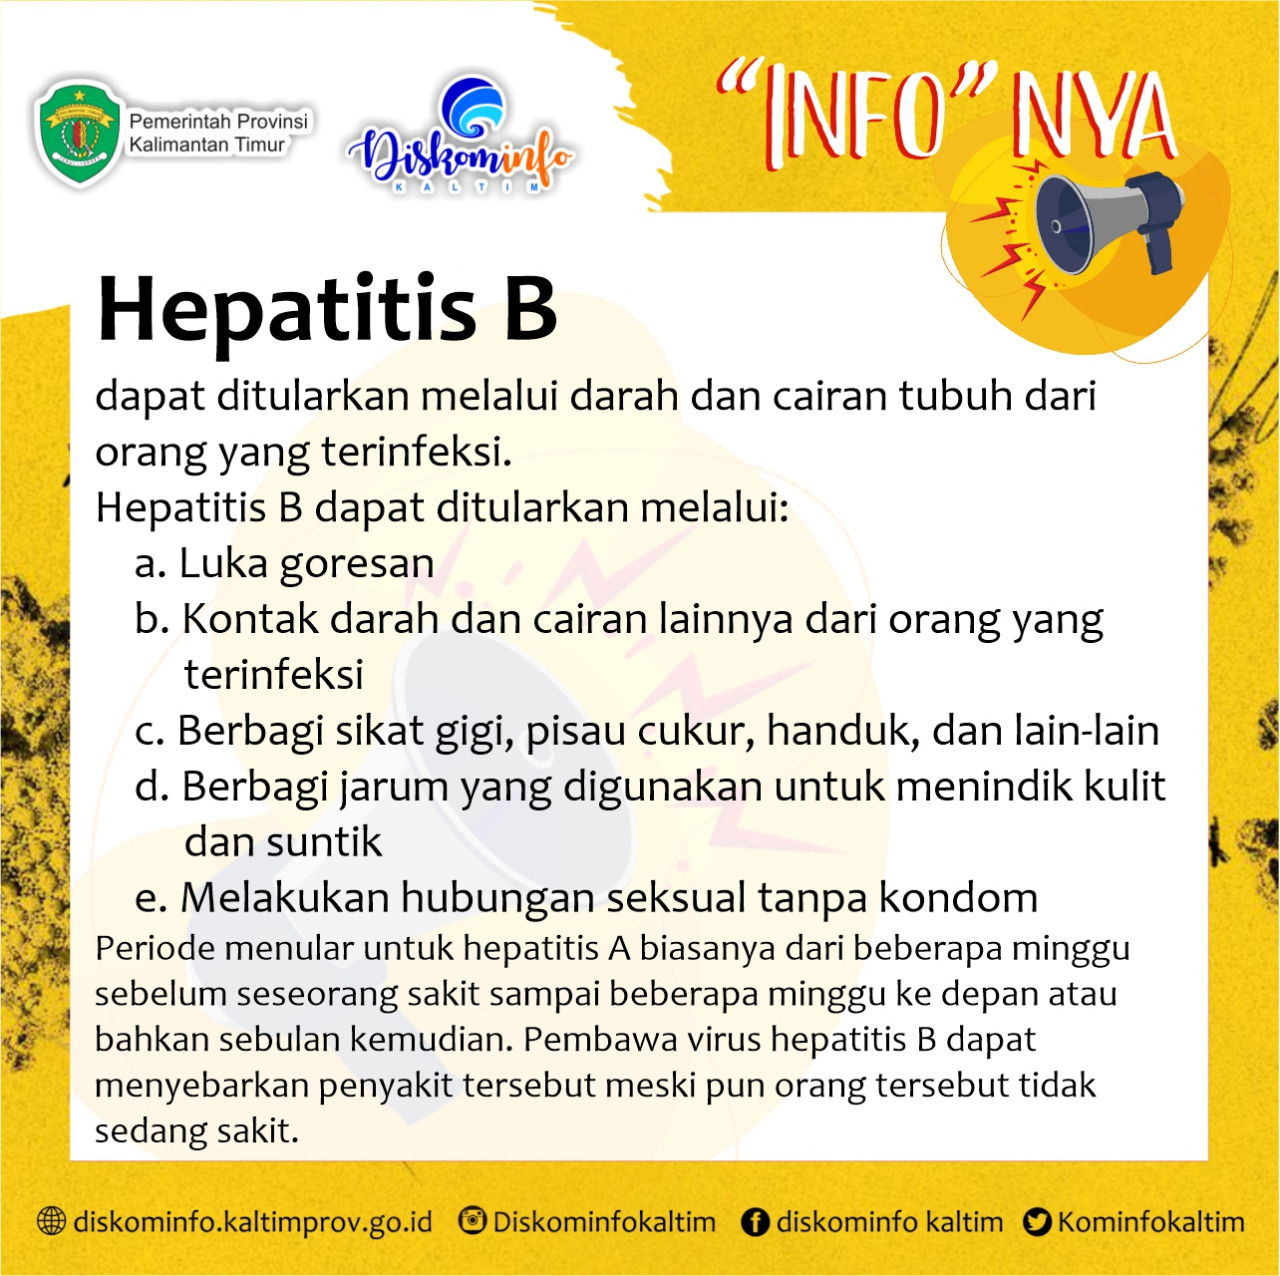 *Bantuan untuk Hepatitis B